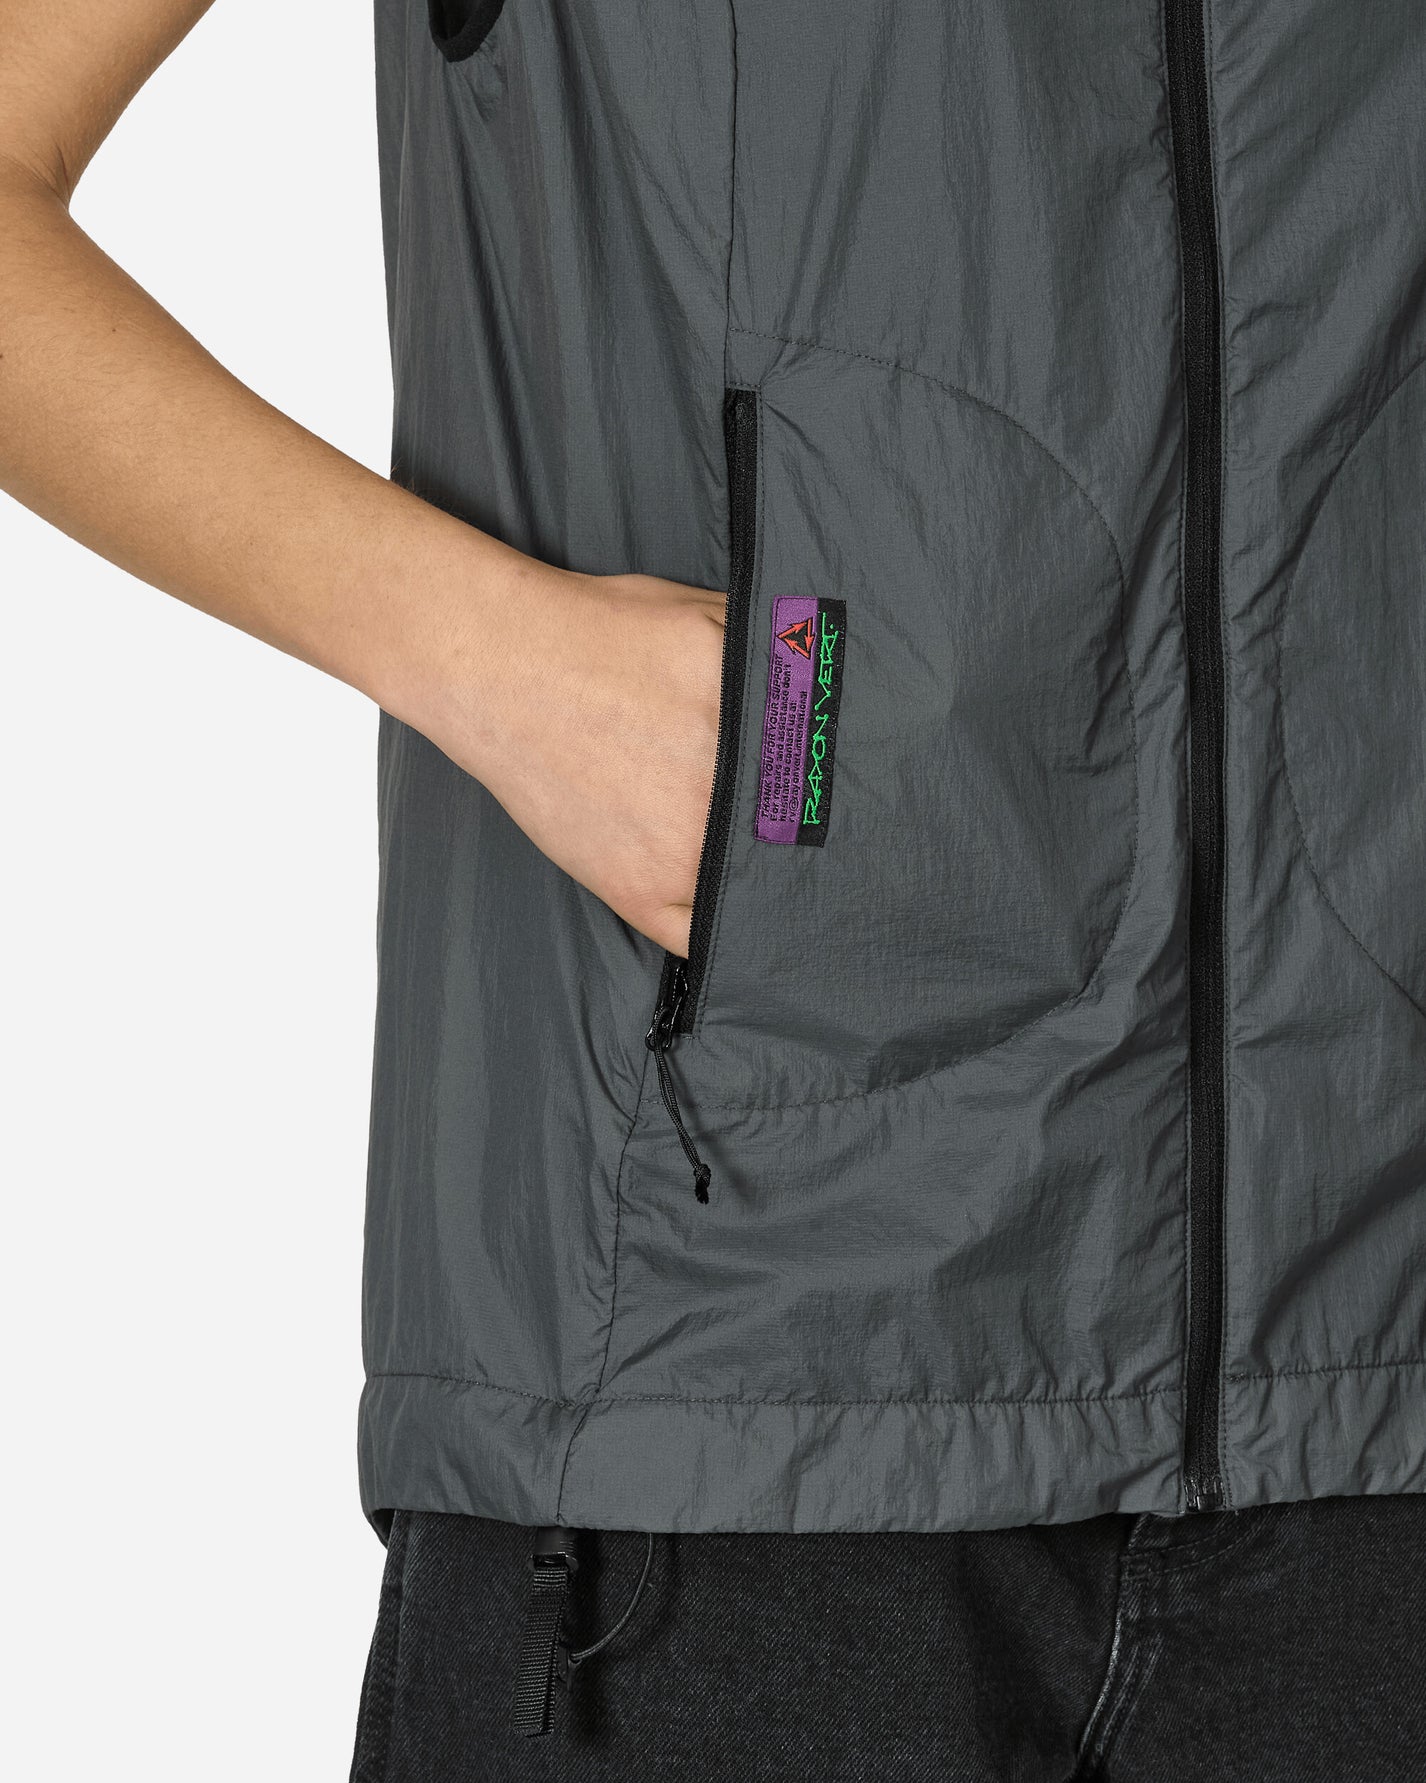 Rayon Vert Splinter Vest Cave Grey Coats and Jackets Vests RVS3-JK13 1